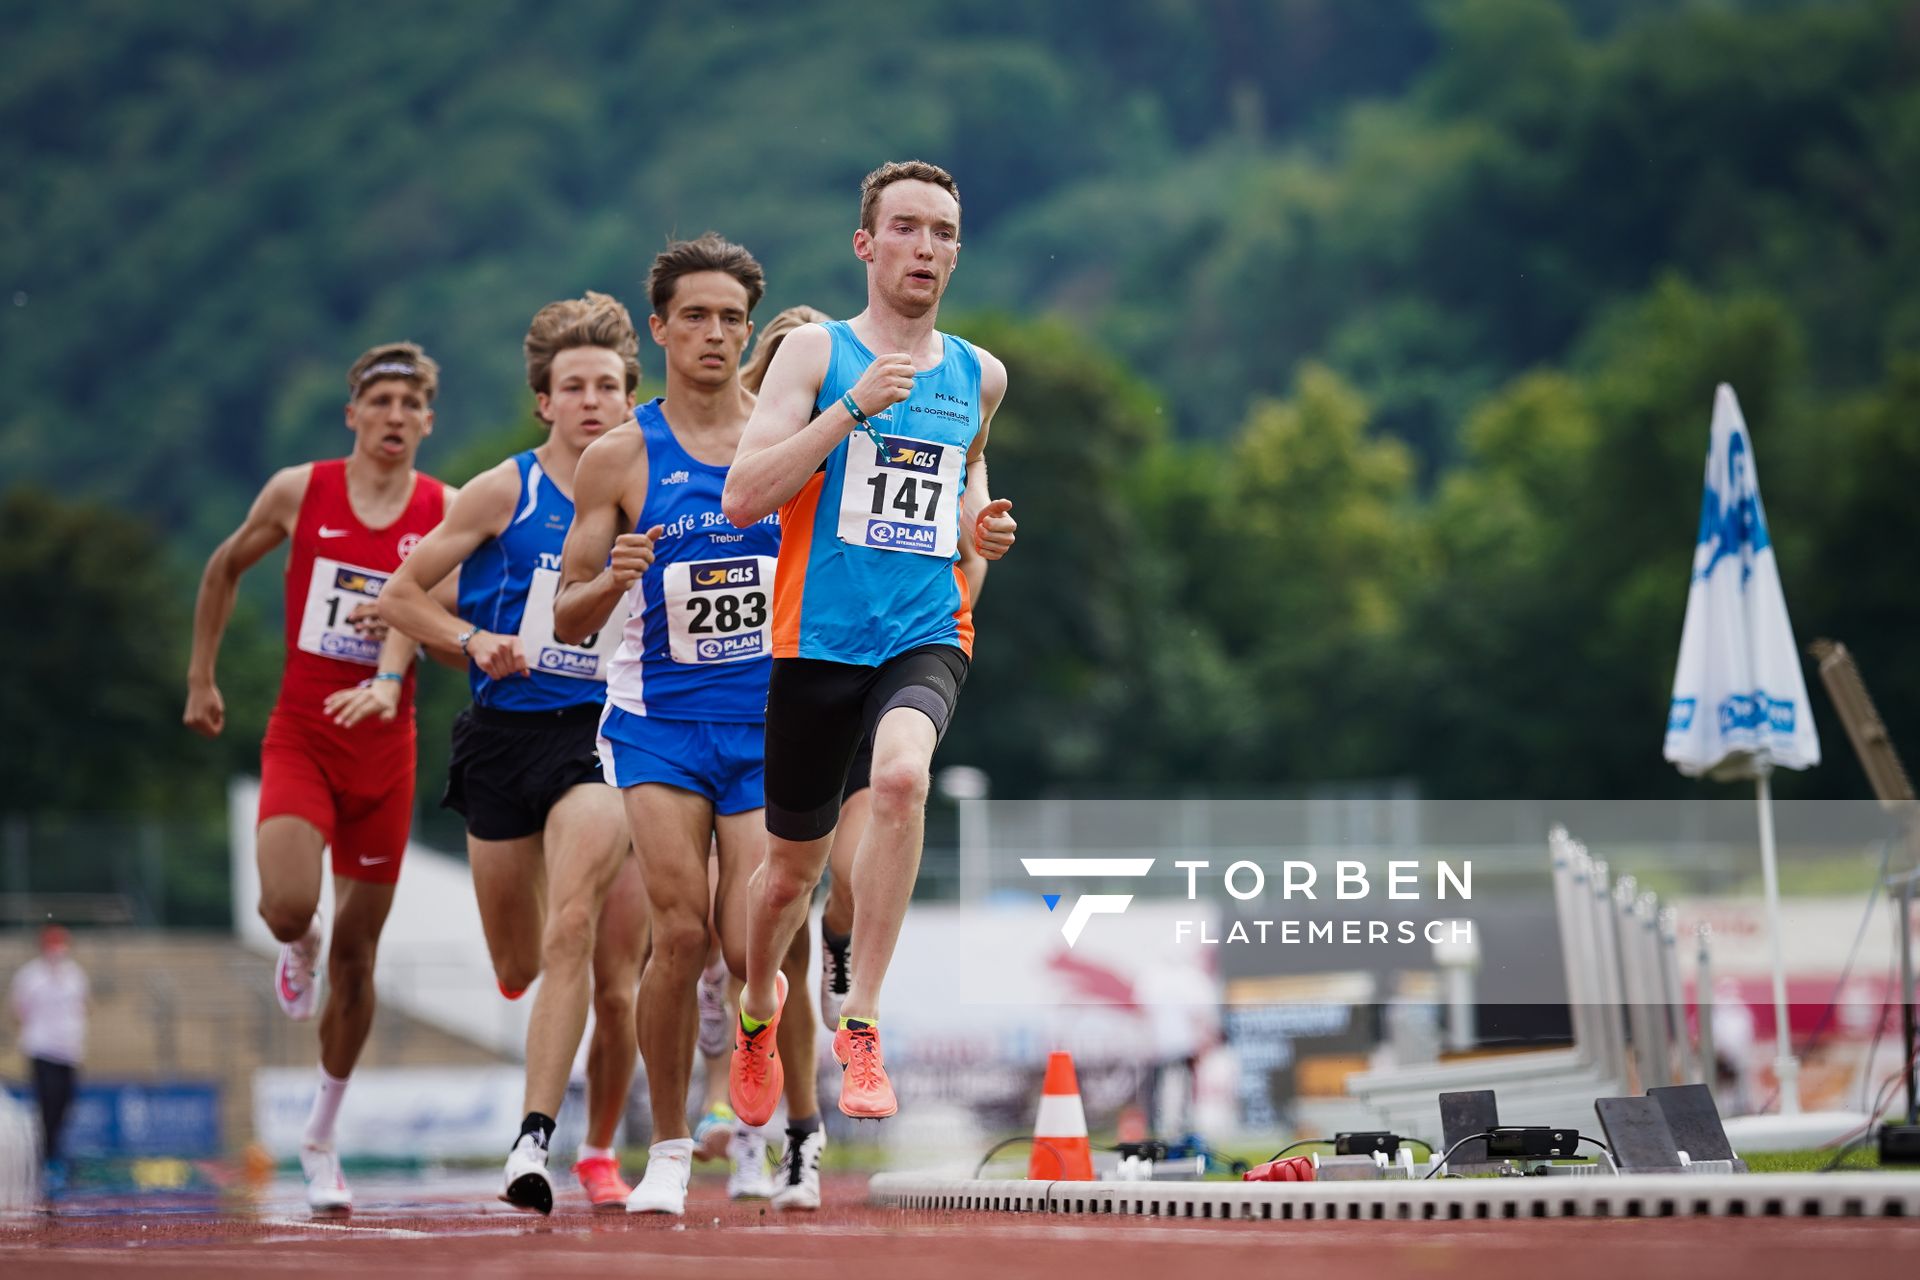 Maximilian Klink (LG Dornburg) fuehrt vor Oskar Schwarzer (TV Gross-Gerau) die 800m an nach 200 Metern am 27.06.2021 waehrend den deutschen U23 Leichtathletik-Meisterschaften 2021 im Stadion Oberwerth in Koblenz